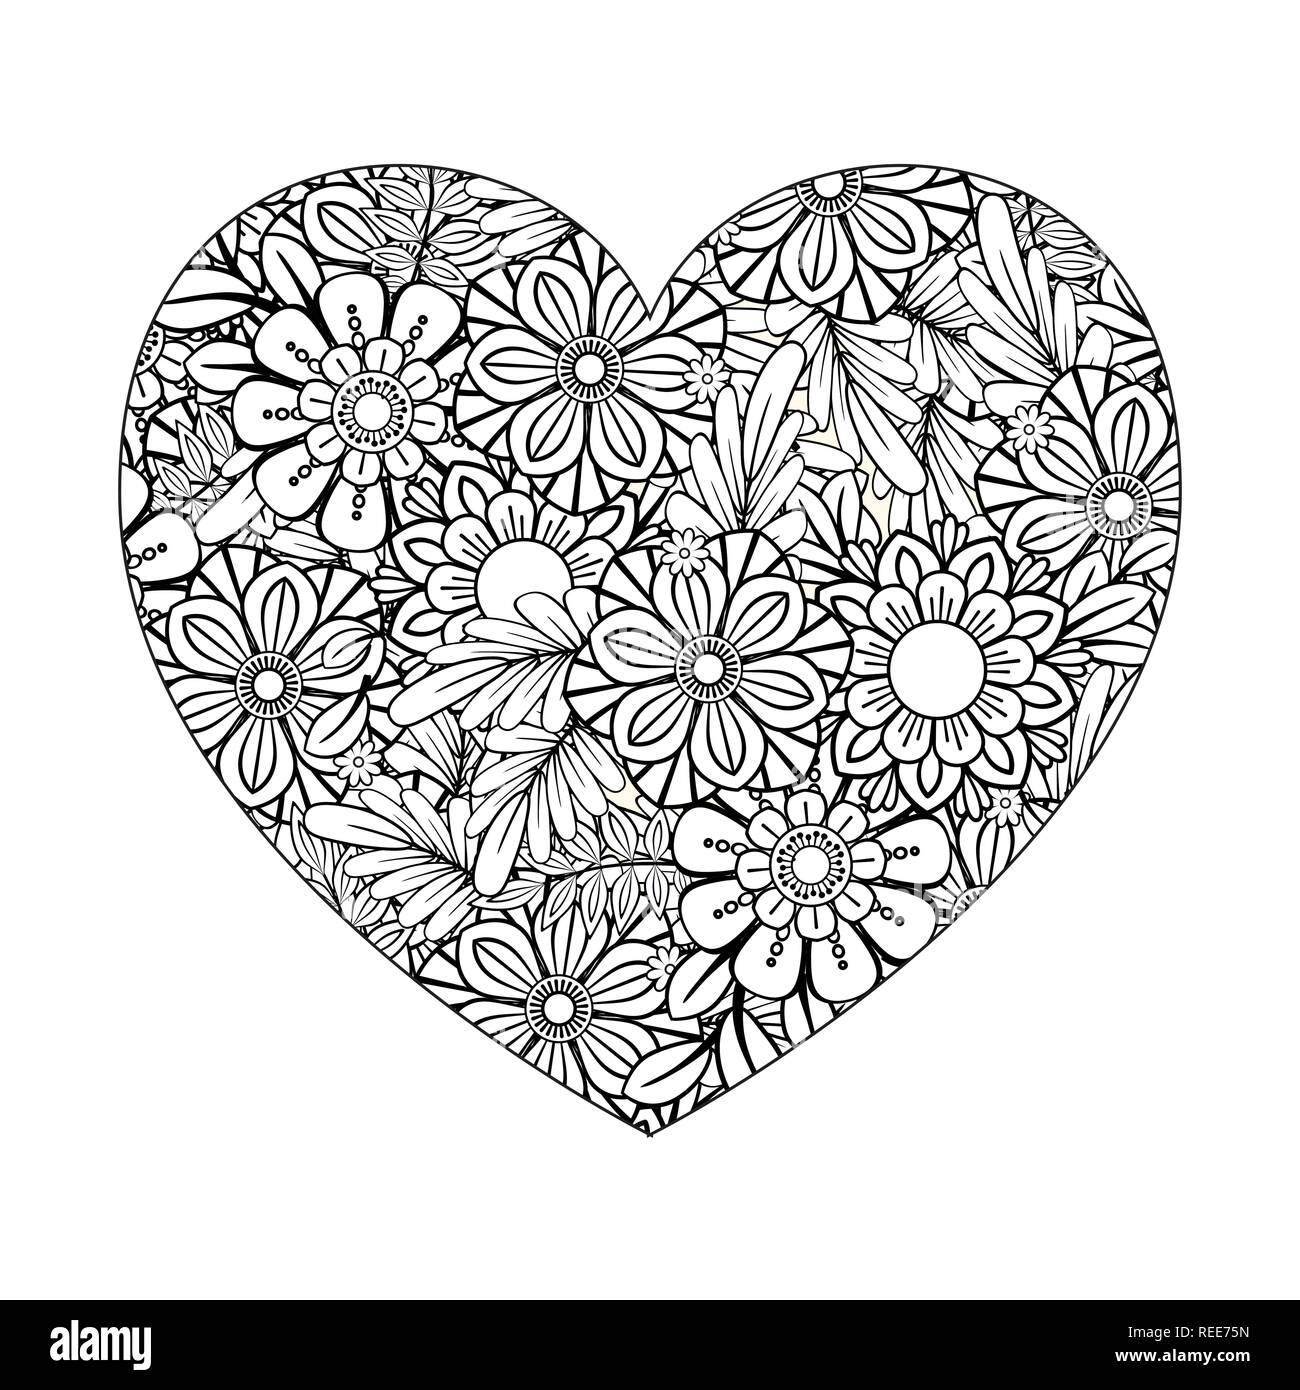 Día De San Valentín Libro De Colorear Para Adultos: Diseños Románticos y  Encantadores a Colorear (Paperback)